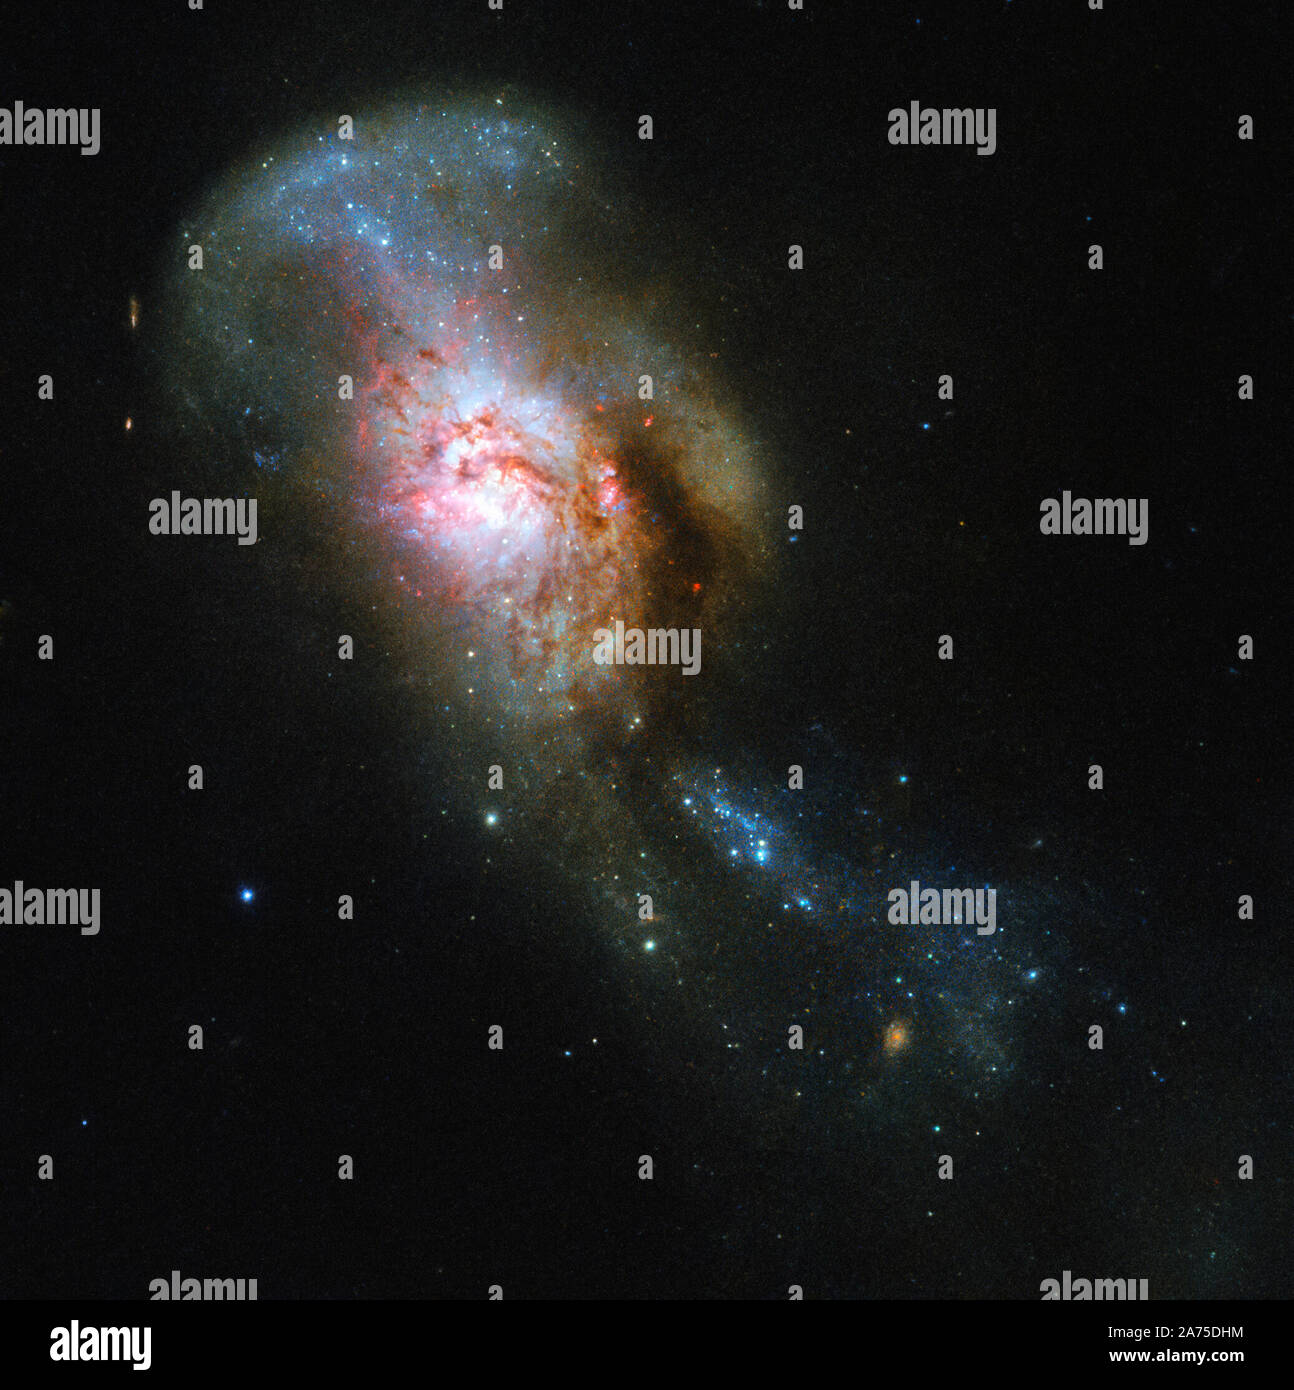 La galaxie apparaissant dans ce télescope Photo de la semaine a un nom évocateur : la méduse fusion. Souvent appelé par son peu plus sèche New General Catalogue Désignation de NGC 4194, ce n'était pas toujours d'une seule entité, mais deux. Une galaxie consommé un plus petit système riche en gaz, les ruisseaux d'étoiles et de poussières dans l'espace. Ces cours d'eau, vu l'augmentation de la partie supérieure de la fusion galaxy, ressemble à l'writhing serpents qui Méduse, un monstre de la mythologie grecque, a eu sur sa tête à la place des cheveux, l'objet de prêt son nom intrigant. Tous les gaz frais ici mise en commun Banque D'Images